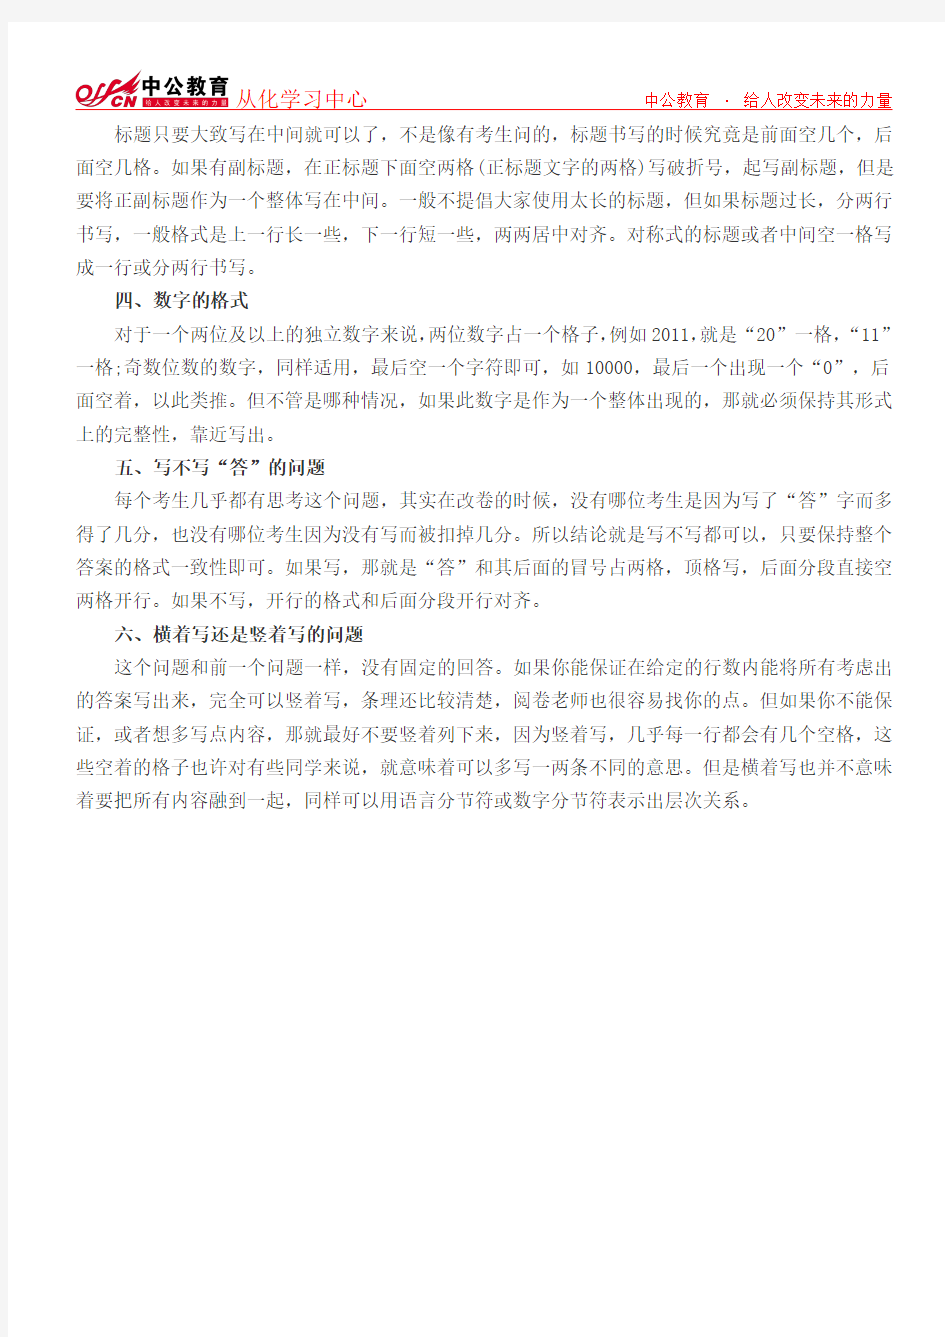 2016年黑龙江公务员考试申论指导：申论写作细节问题